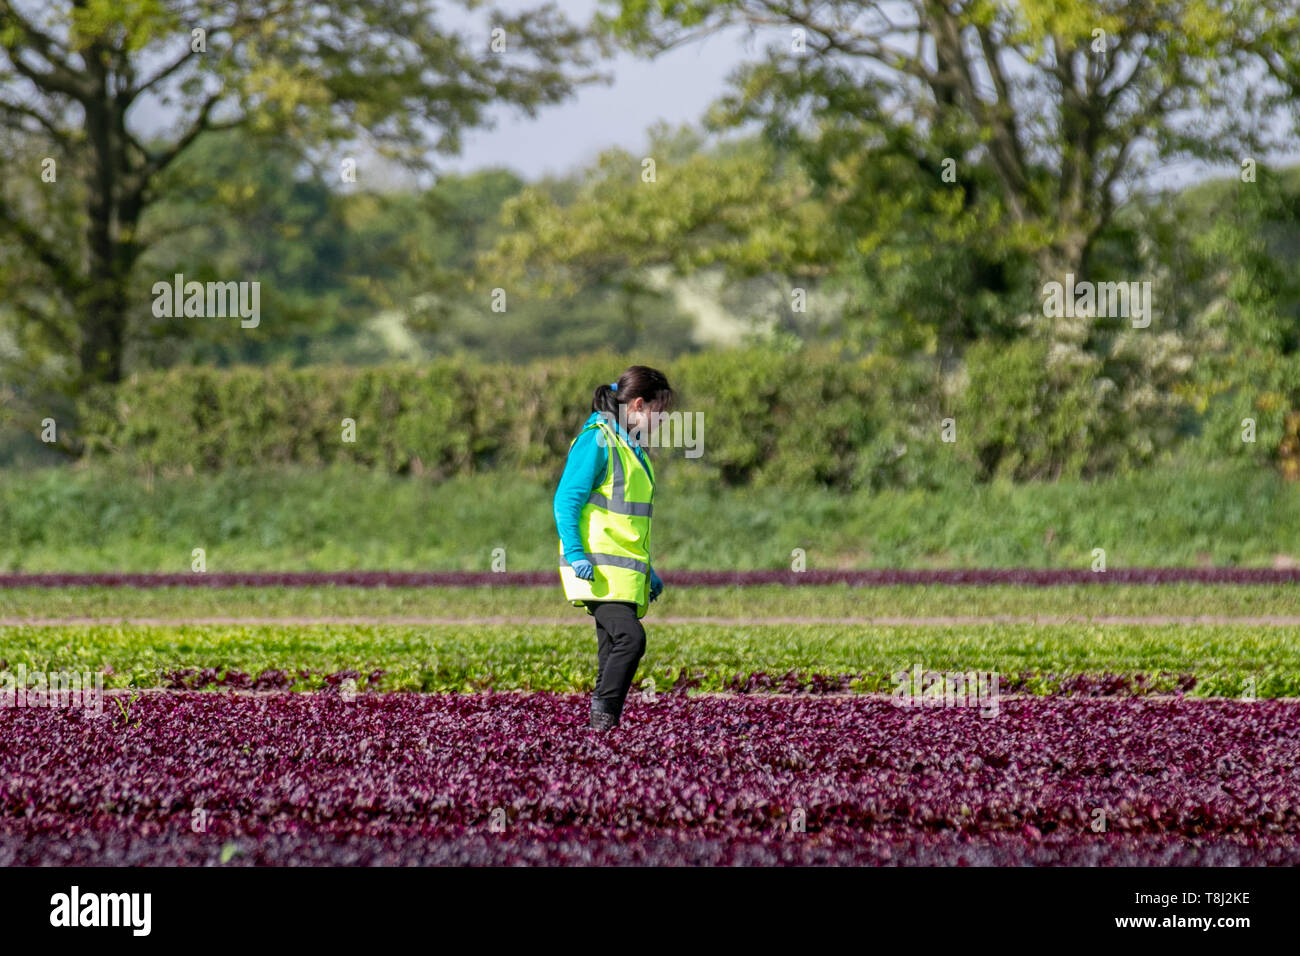 Jäten von roten Salatpflanzen in Rufford, Großbritannien. Mai 2019. Frühlingswetter in Großbritannien. Die Felder passen sich einem magentarot-rötlich-violetten Farbton an, da reifende Reihen von Rosensalat vor der Ernte auf Unkraut untersucht werden. Trotz der Brexit-Zweifel sind EU-Wanderarbeitnehmer in die Farmen im Nordwesten von Lancashire zurückgekehrt, um bei der Salaternte zu helfen. Romainsalat hat einen der höchsten Nährwerte in der Familie der Salatblätter. Stockfoto